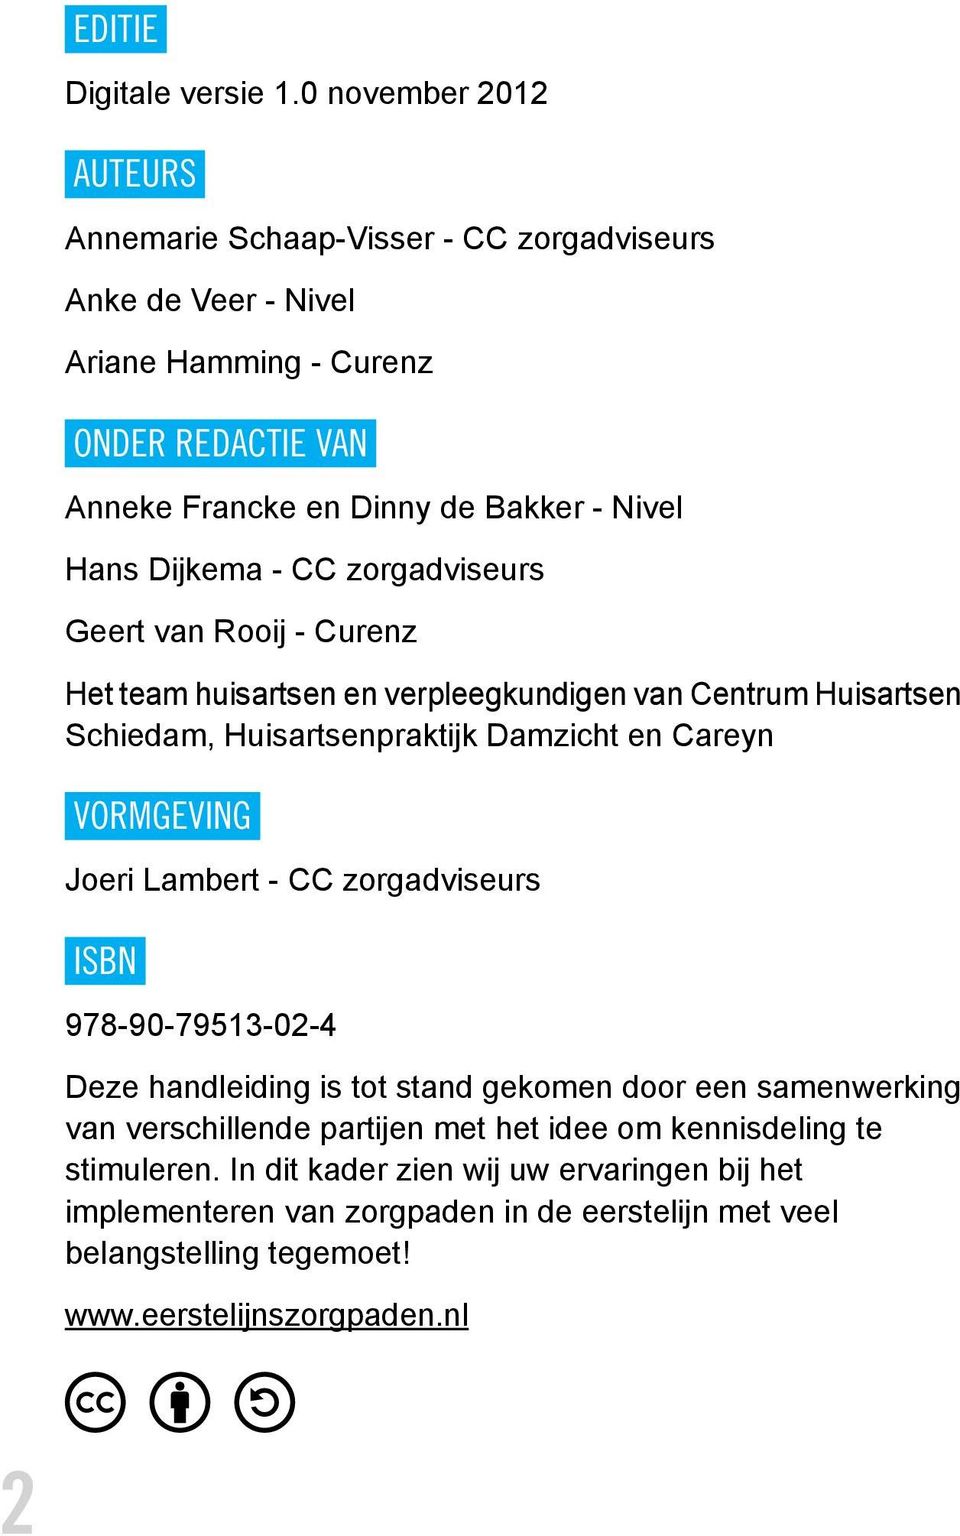 Dijkema - CC zorgadviseurs Geert van Rooij - Curenz Het team huisartsen en verpleegkundigen van Centrum Huisartsen Schiedam, Huisartsenpraktijk Damzicht en Careyn VORMGEVING